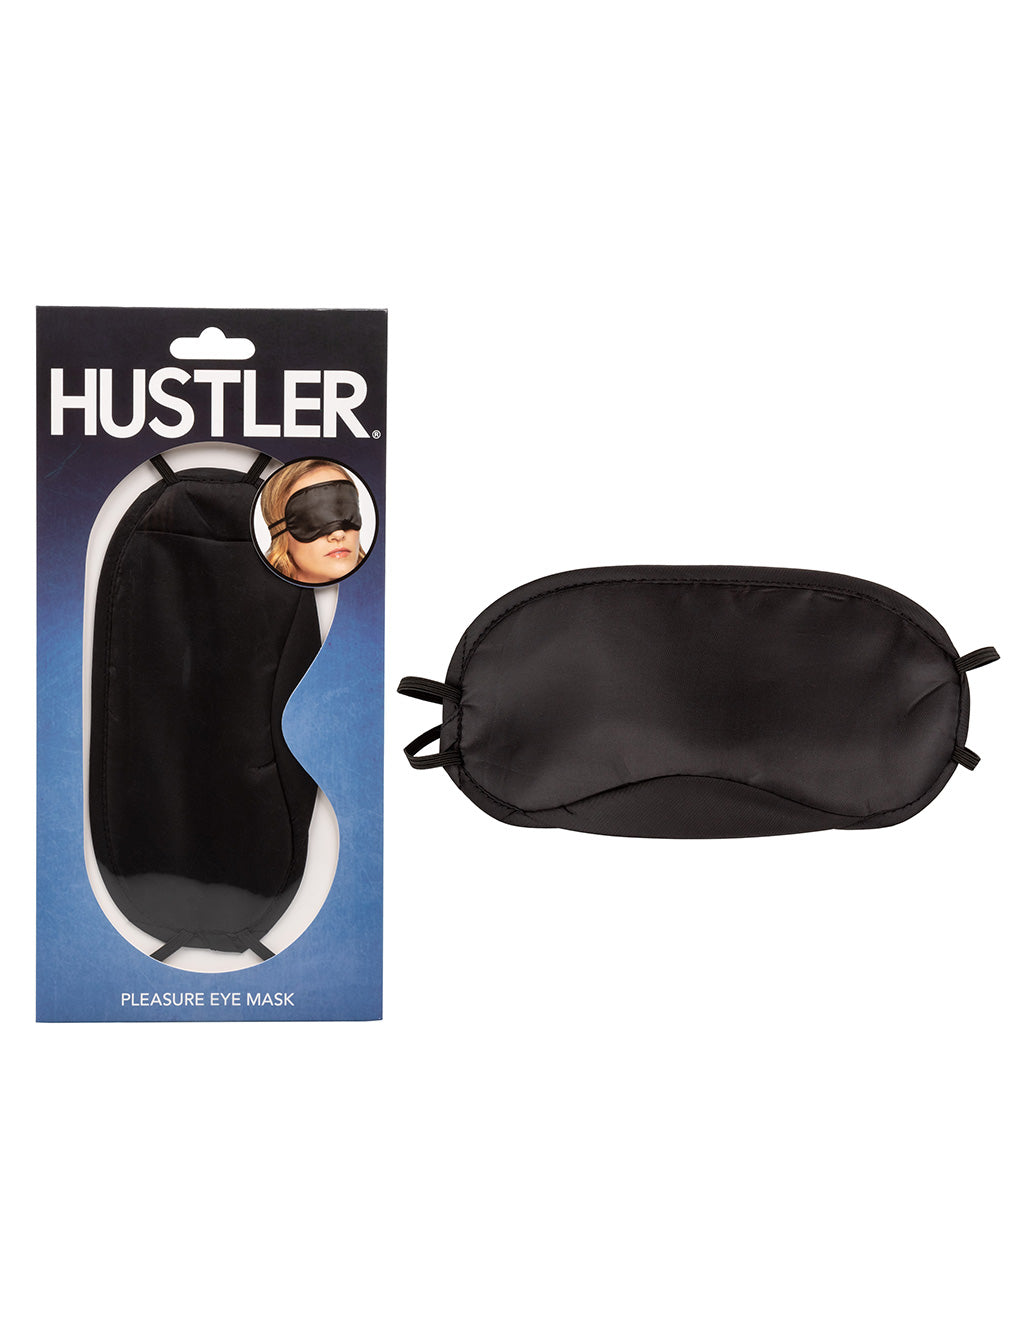 Hustler® Pleasure Eye Mask- With package